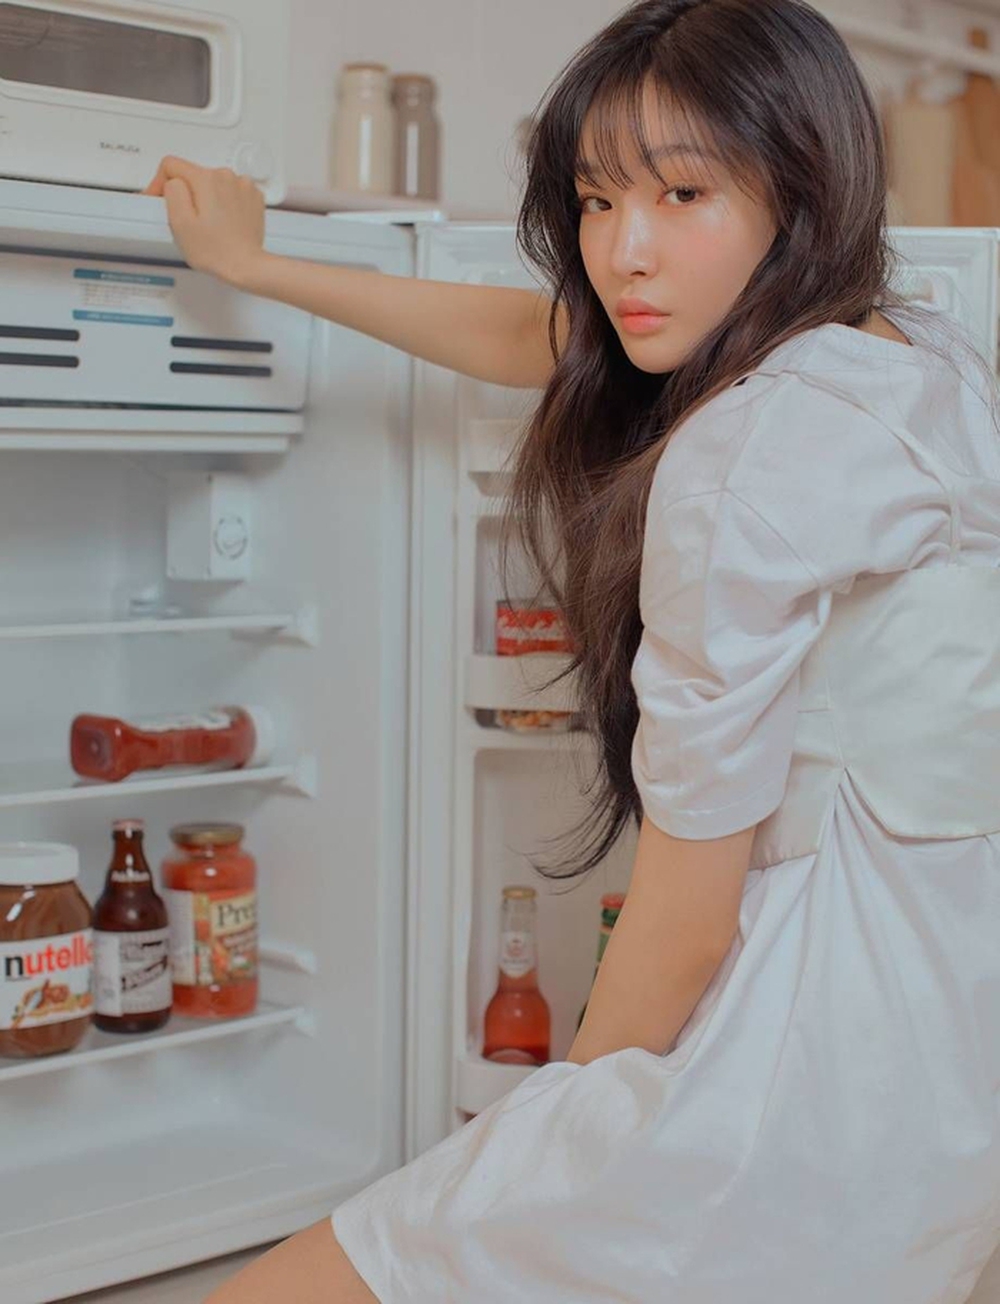 8 sai lầm khi bảo quản thực phẩm trong tủ lạnh dịp Tết - Ảnh 2.